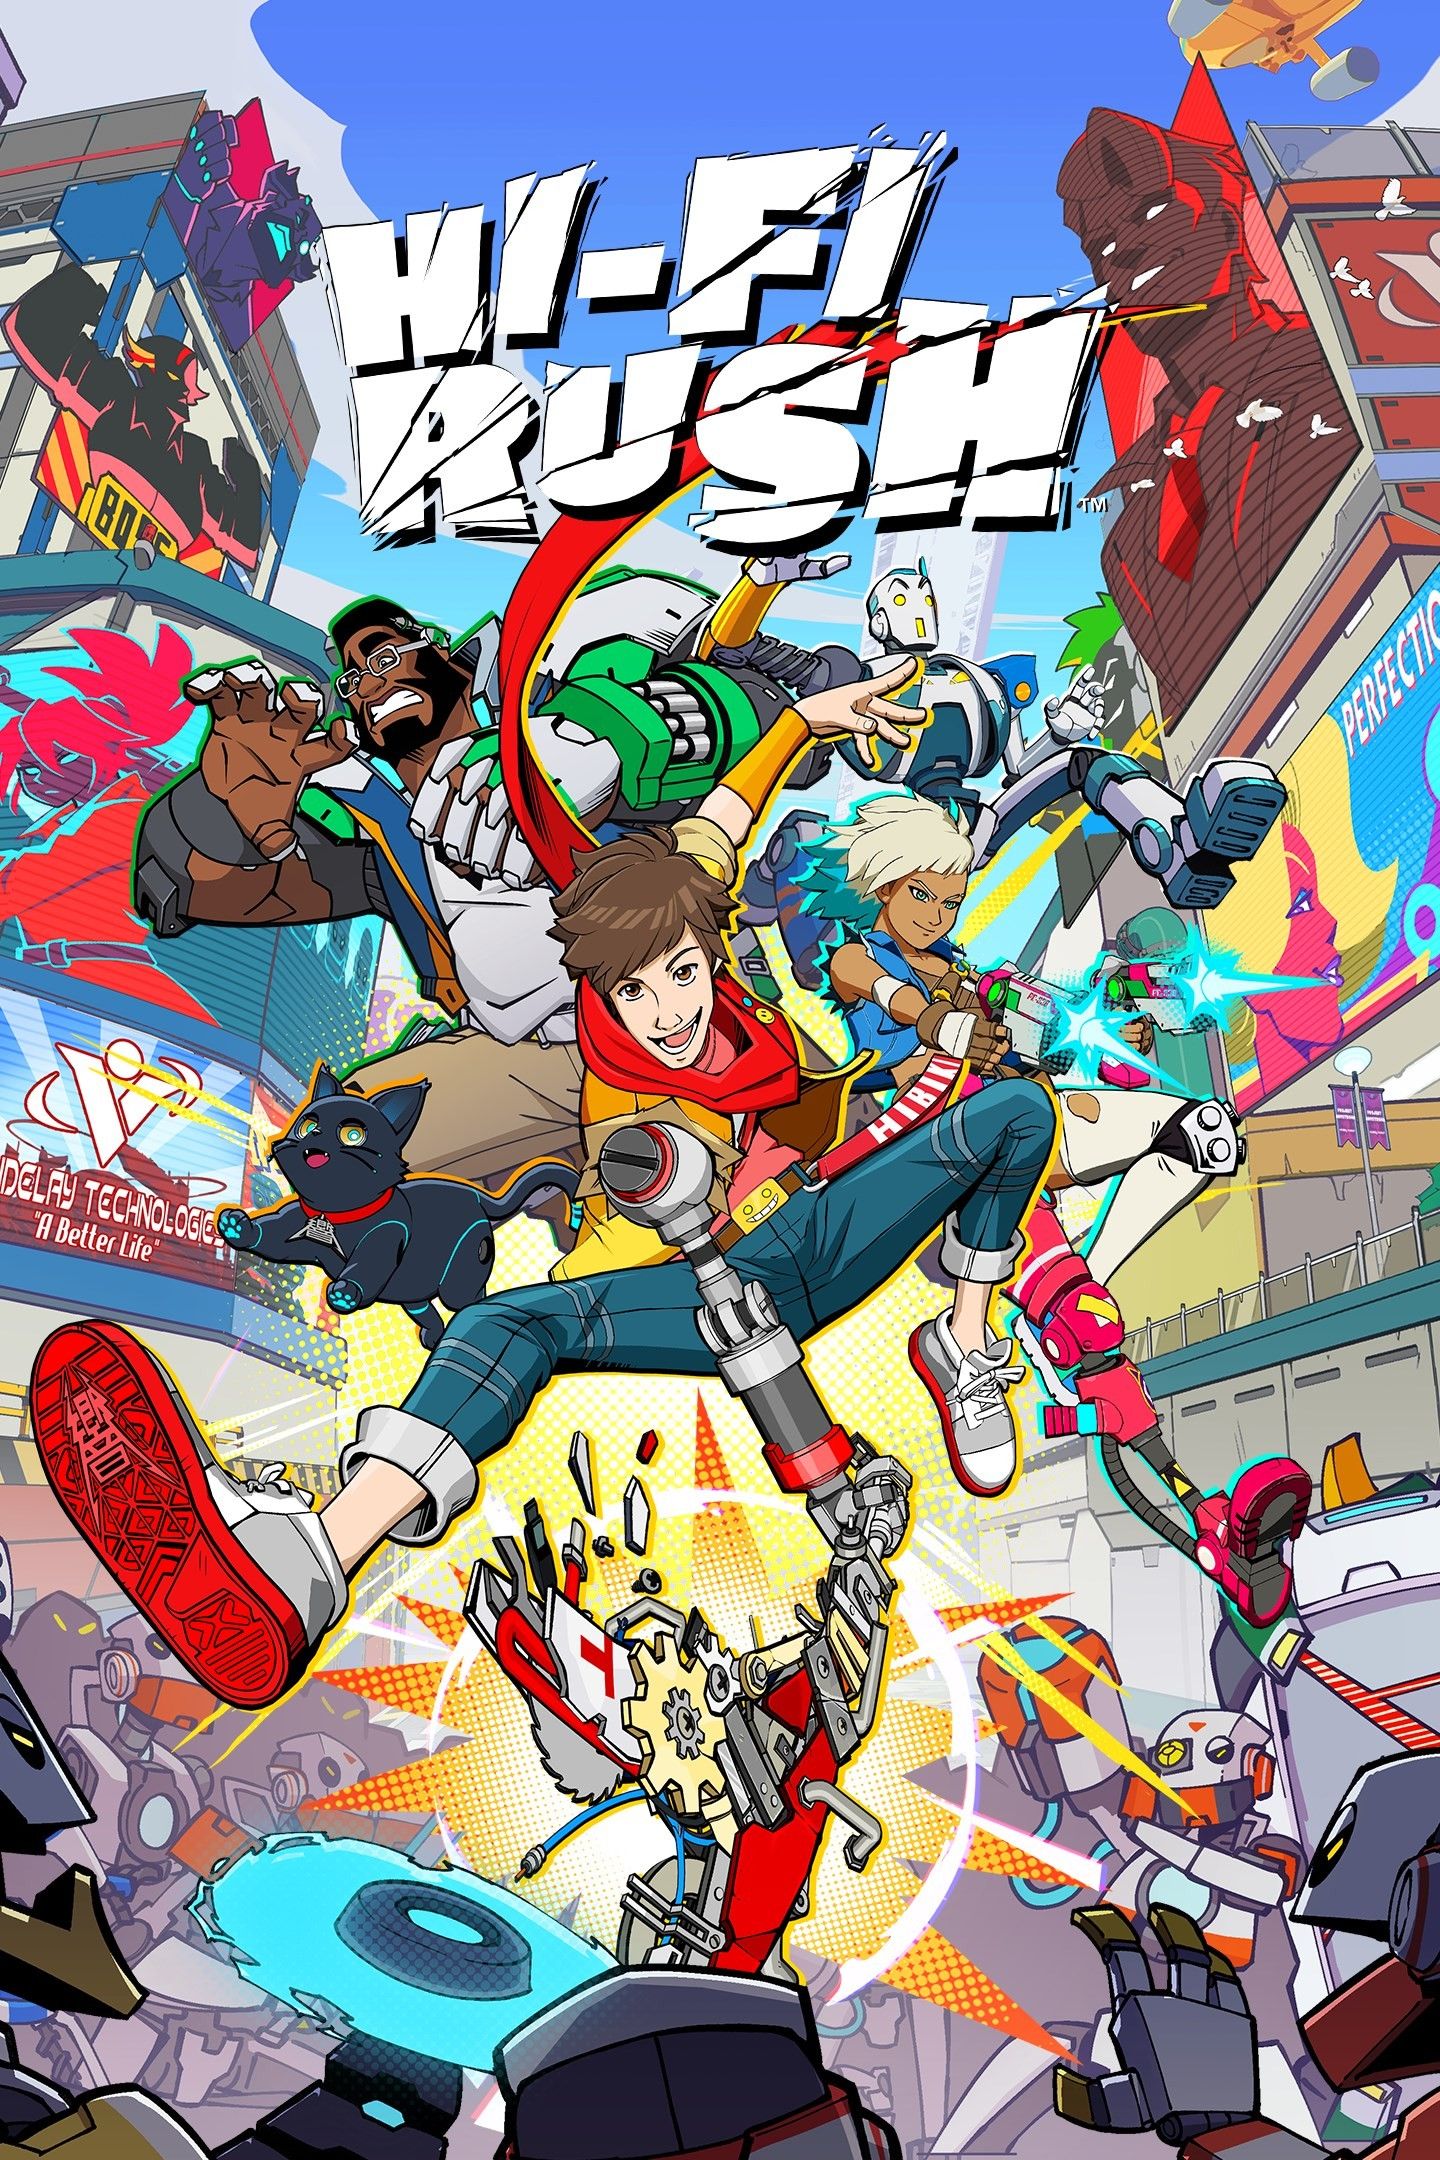 Hi-Fi Rush Game Poster